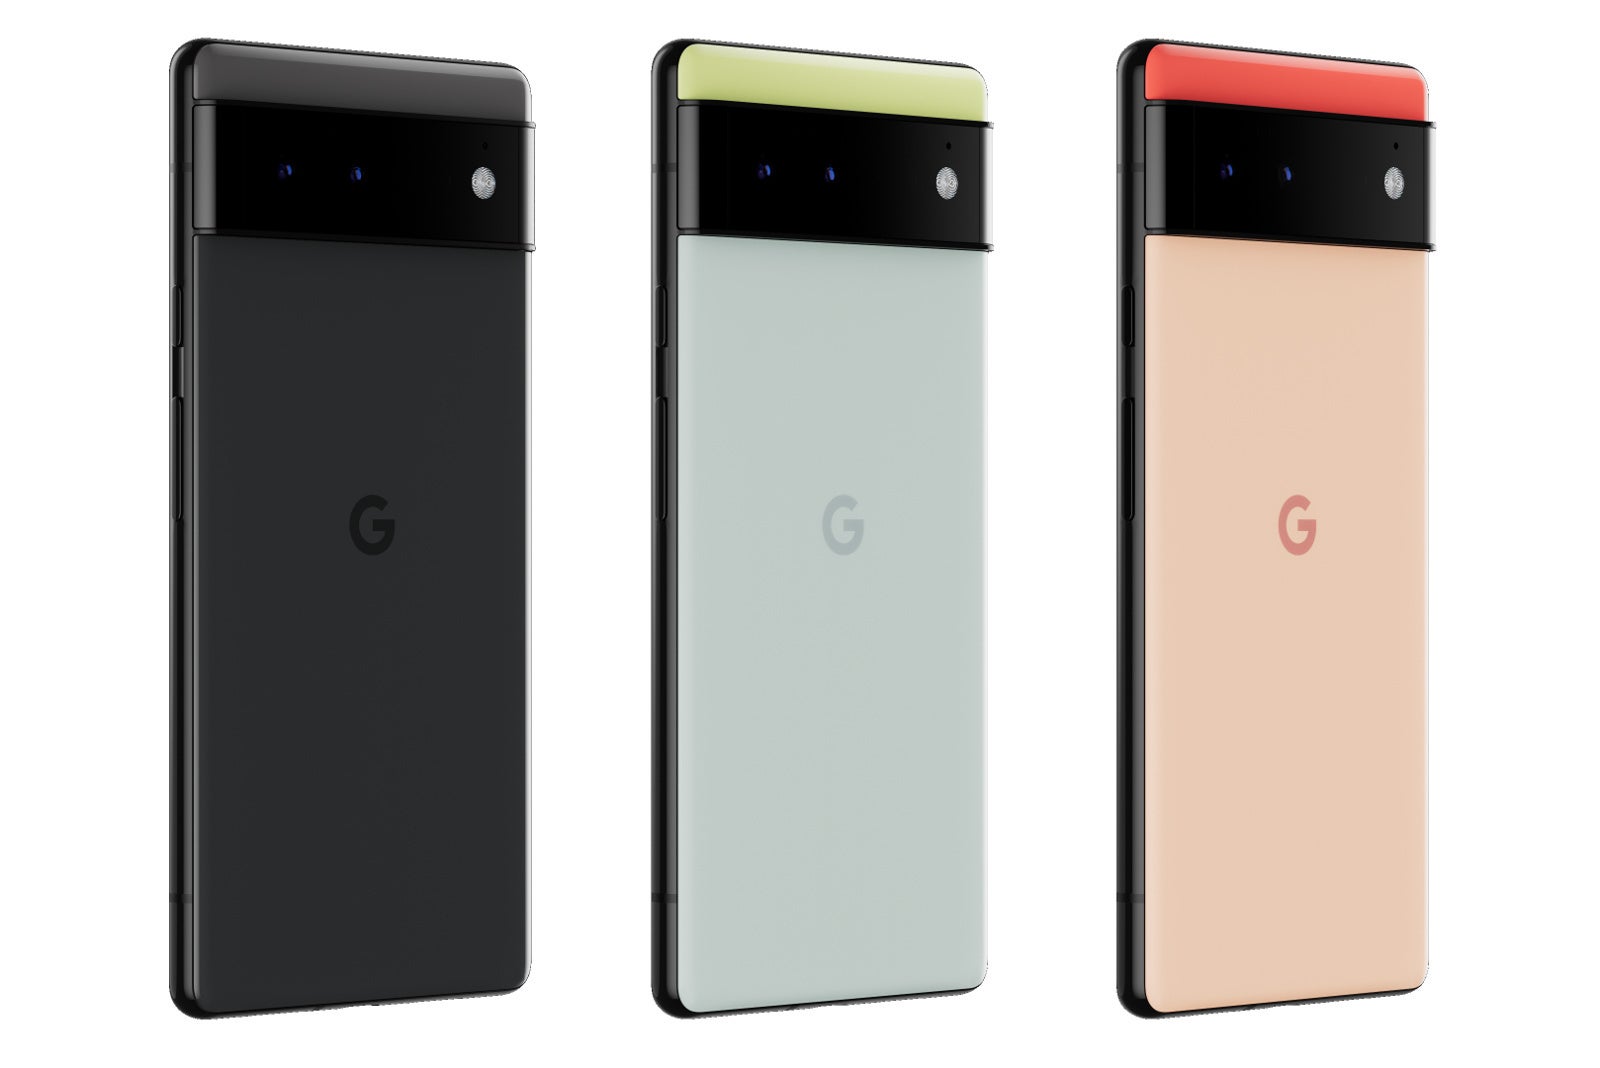 Pixel 6 colors - Google Pixel 6 vs Pixel 6 Pro